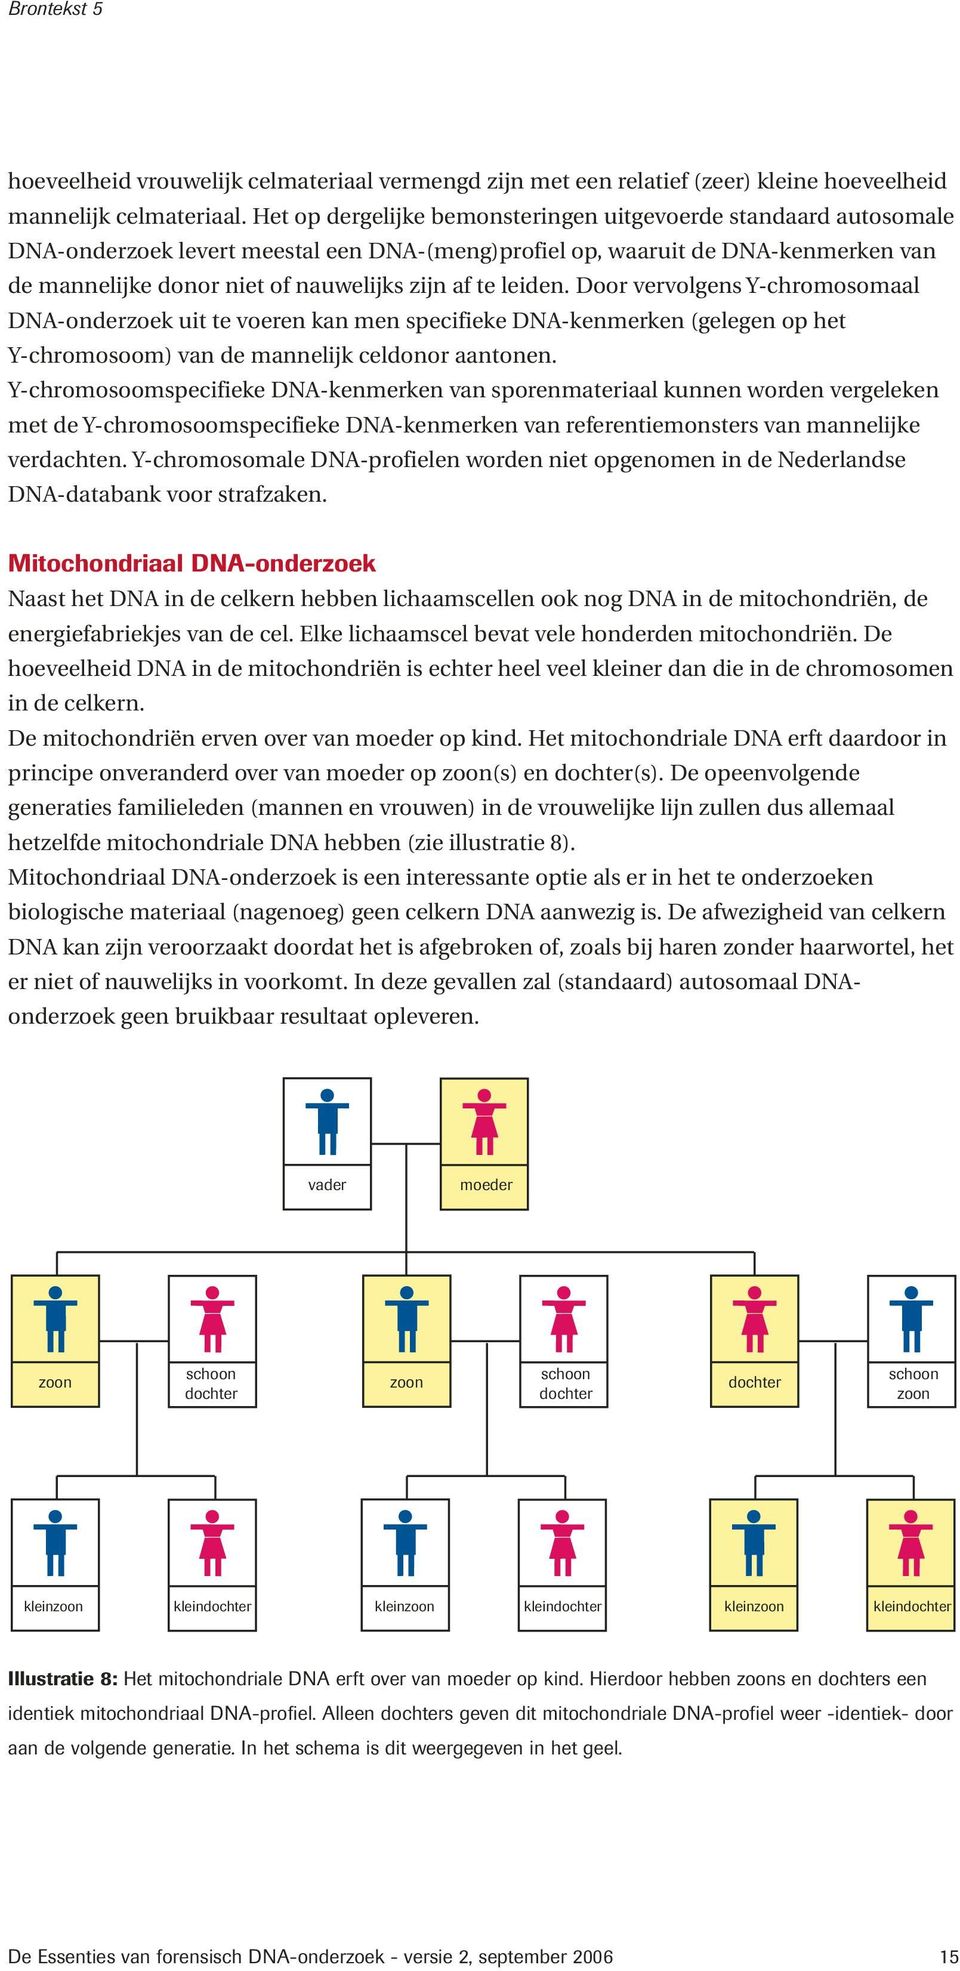 leiden. Door vervolgens Y-chromosomaal DN-onderzoek uit te voeren kan men specifieke DN-kenmerken (gelegen op het Y-chromosoom) van de mannelijk celdonor aantonen.